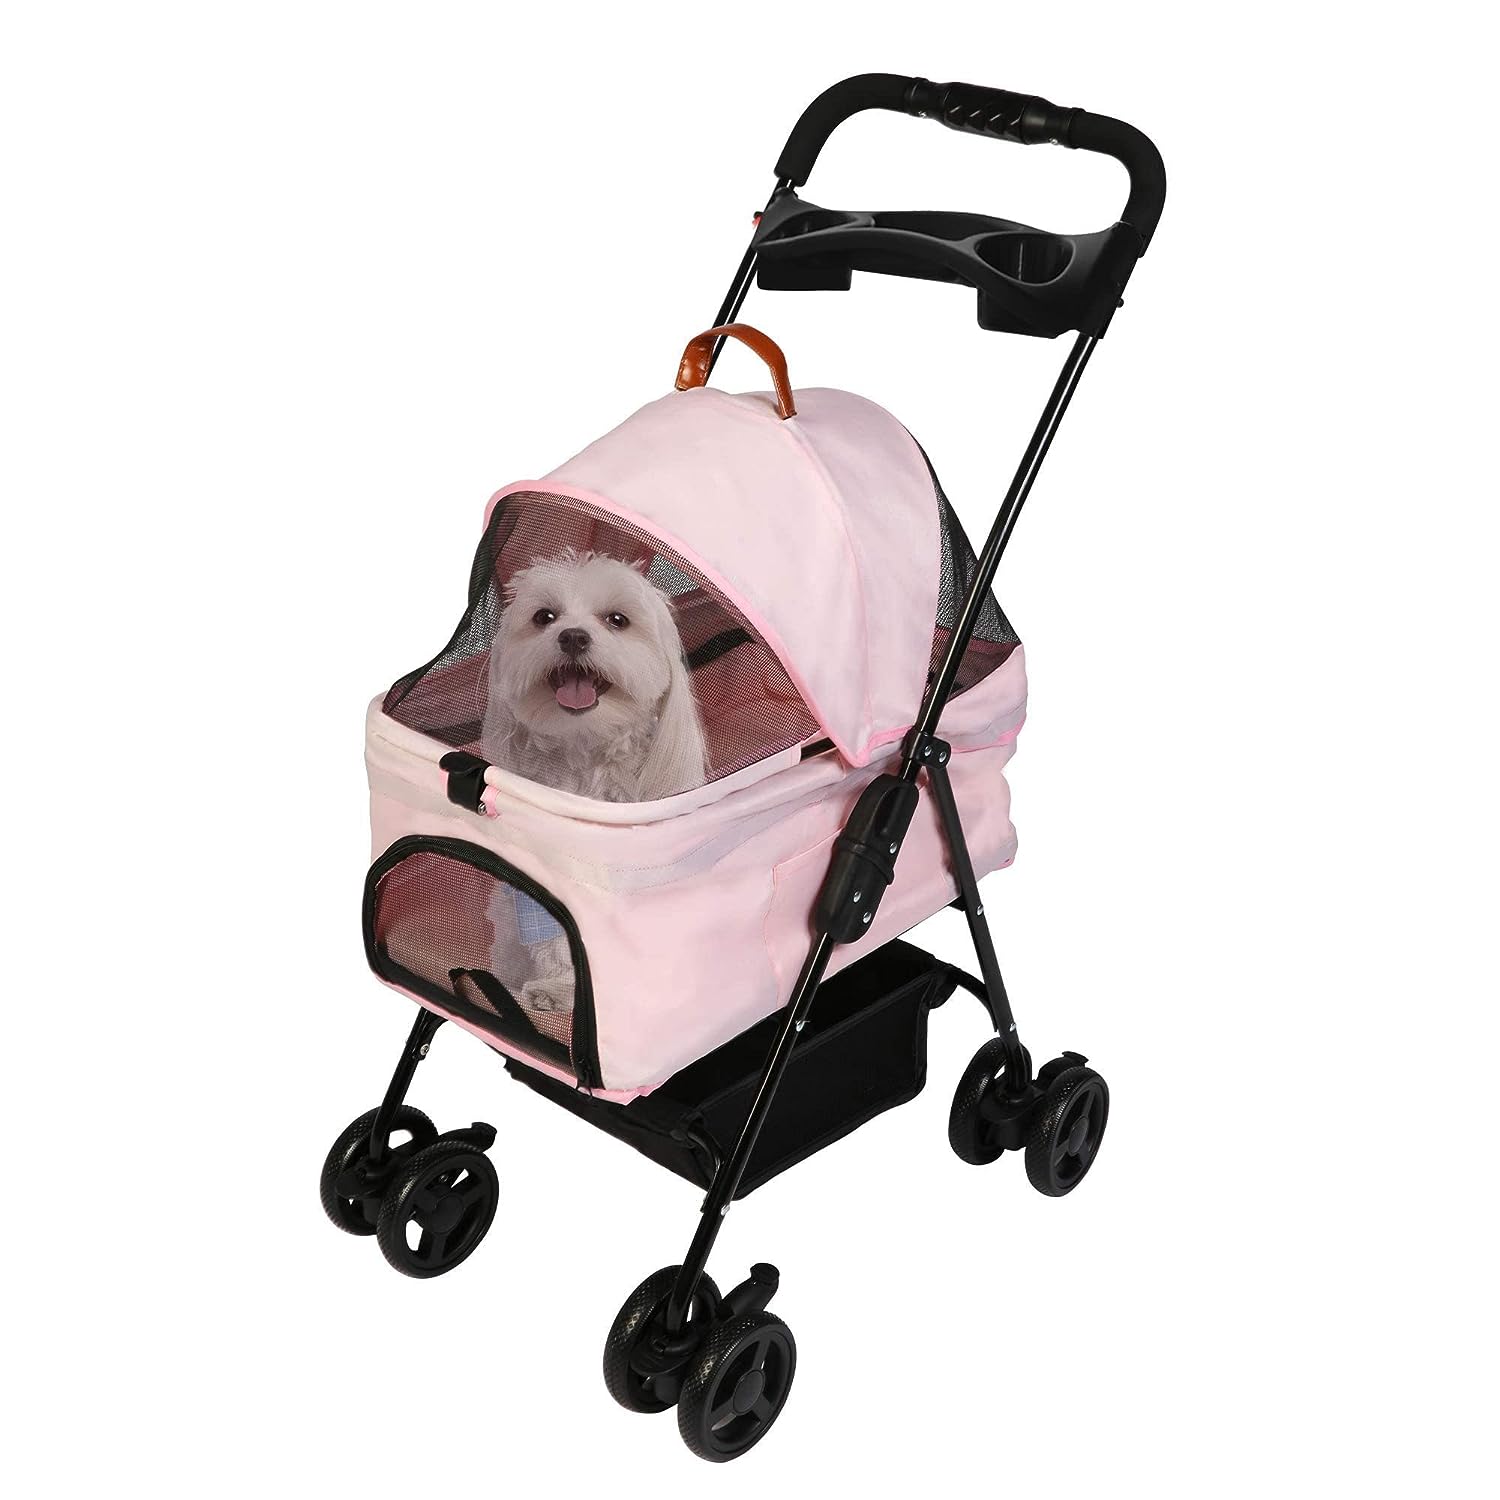 Folding Dog Stroller Carrier Pet Stroller with Storage Basket and Multiple Mesh Windows, Pink